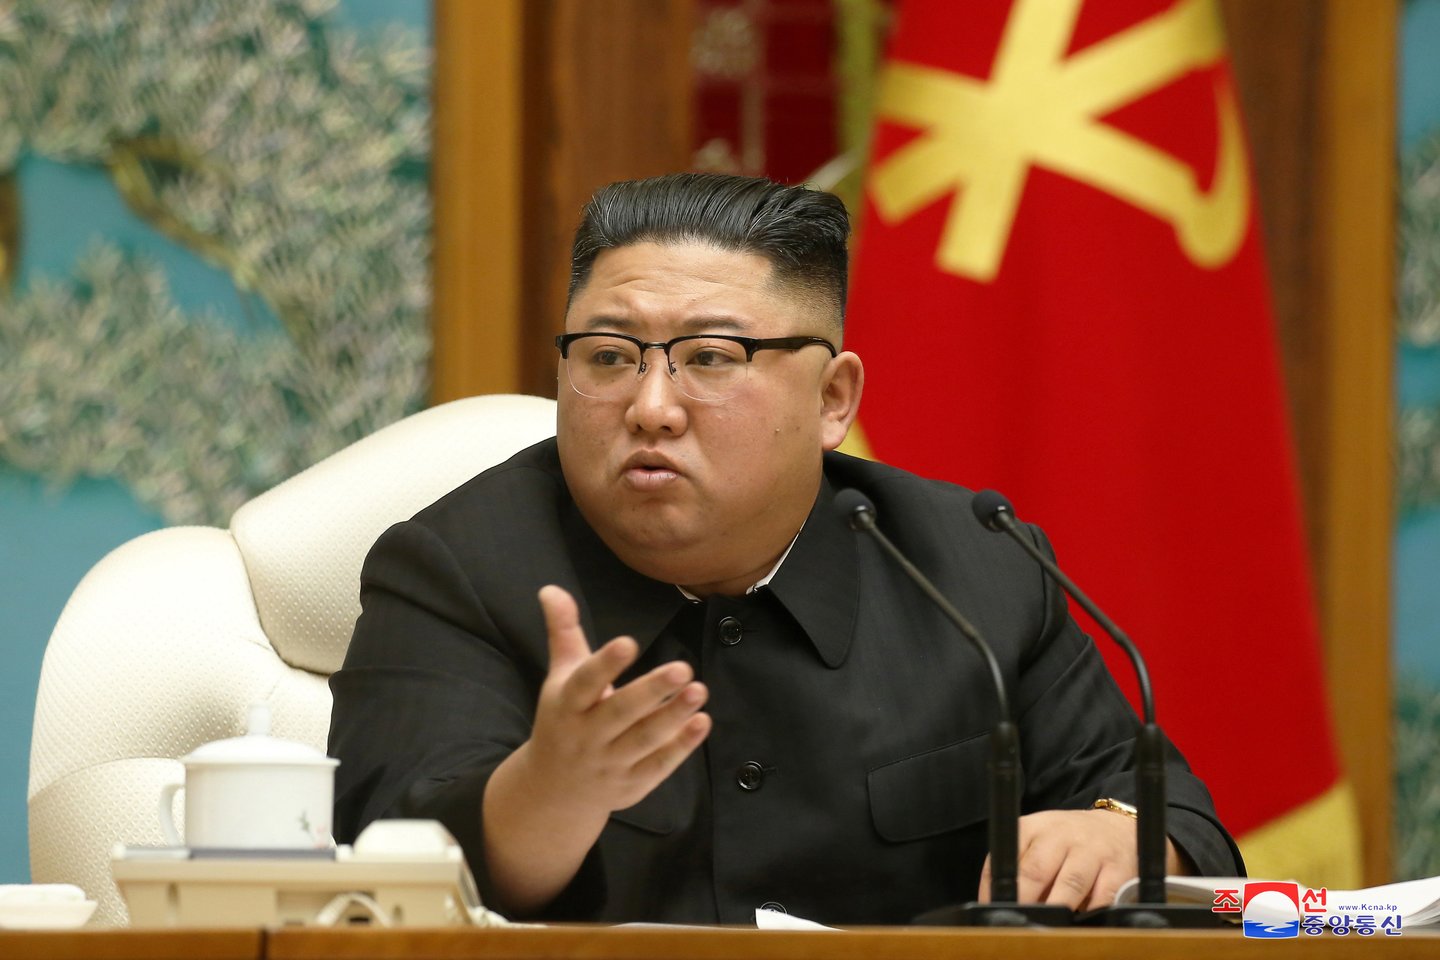 Kim Jong-uno sūnėno dingimas taip pat siejamas su Šiaurės Korėjos išlaisvinimo siekiančia organizacija. Ji į pasaulio akiratį pateko praėjusiais metais įvykdžiusi išpuolį ambasadoje Madride.<br> Reuters/Scanpix nuotr.